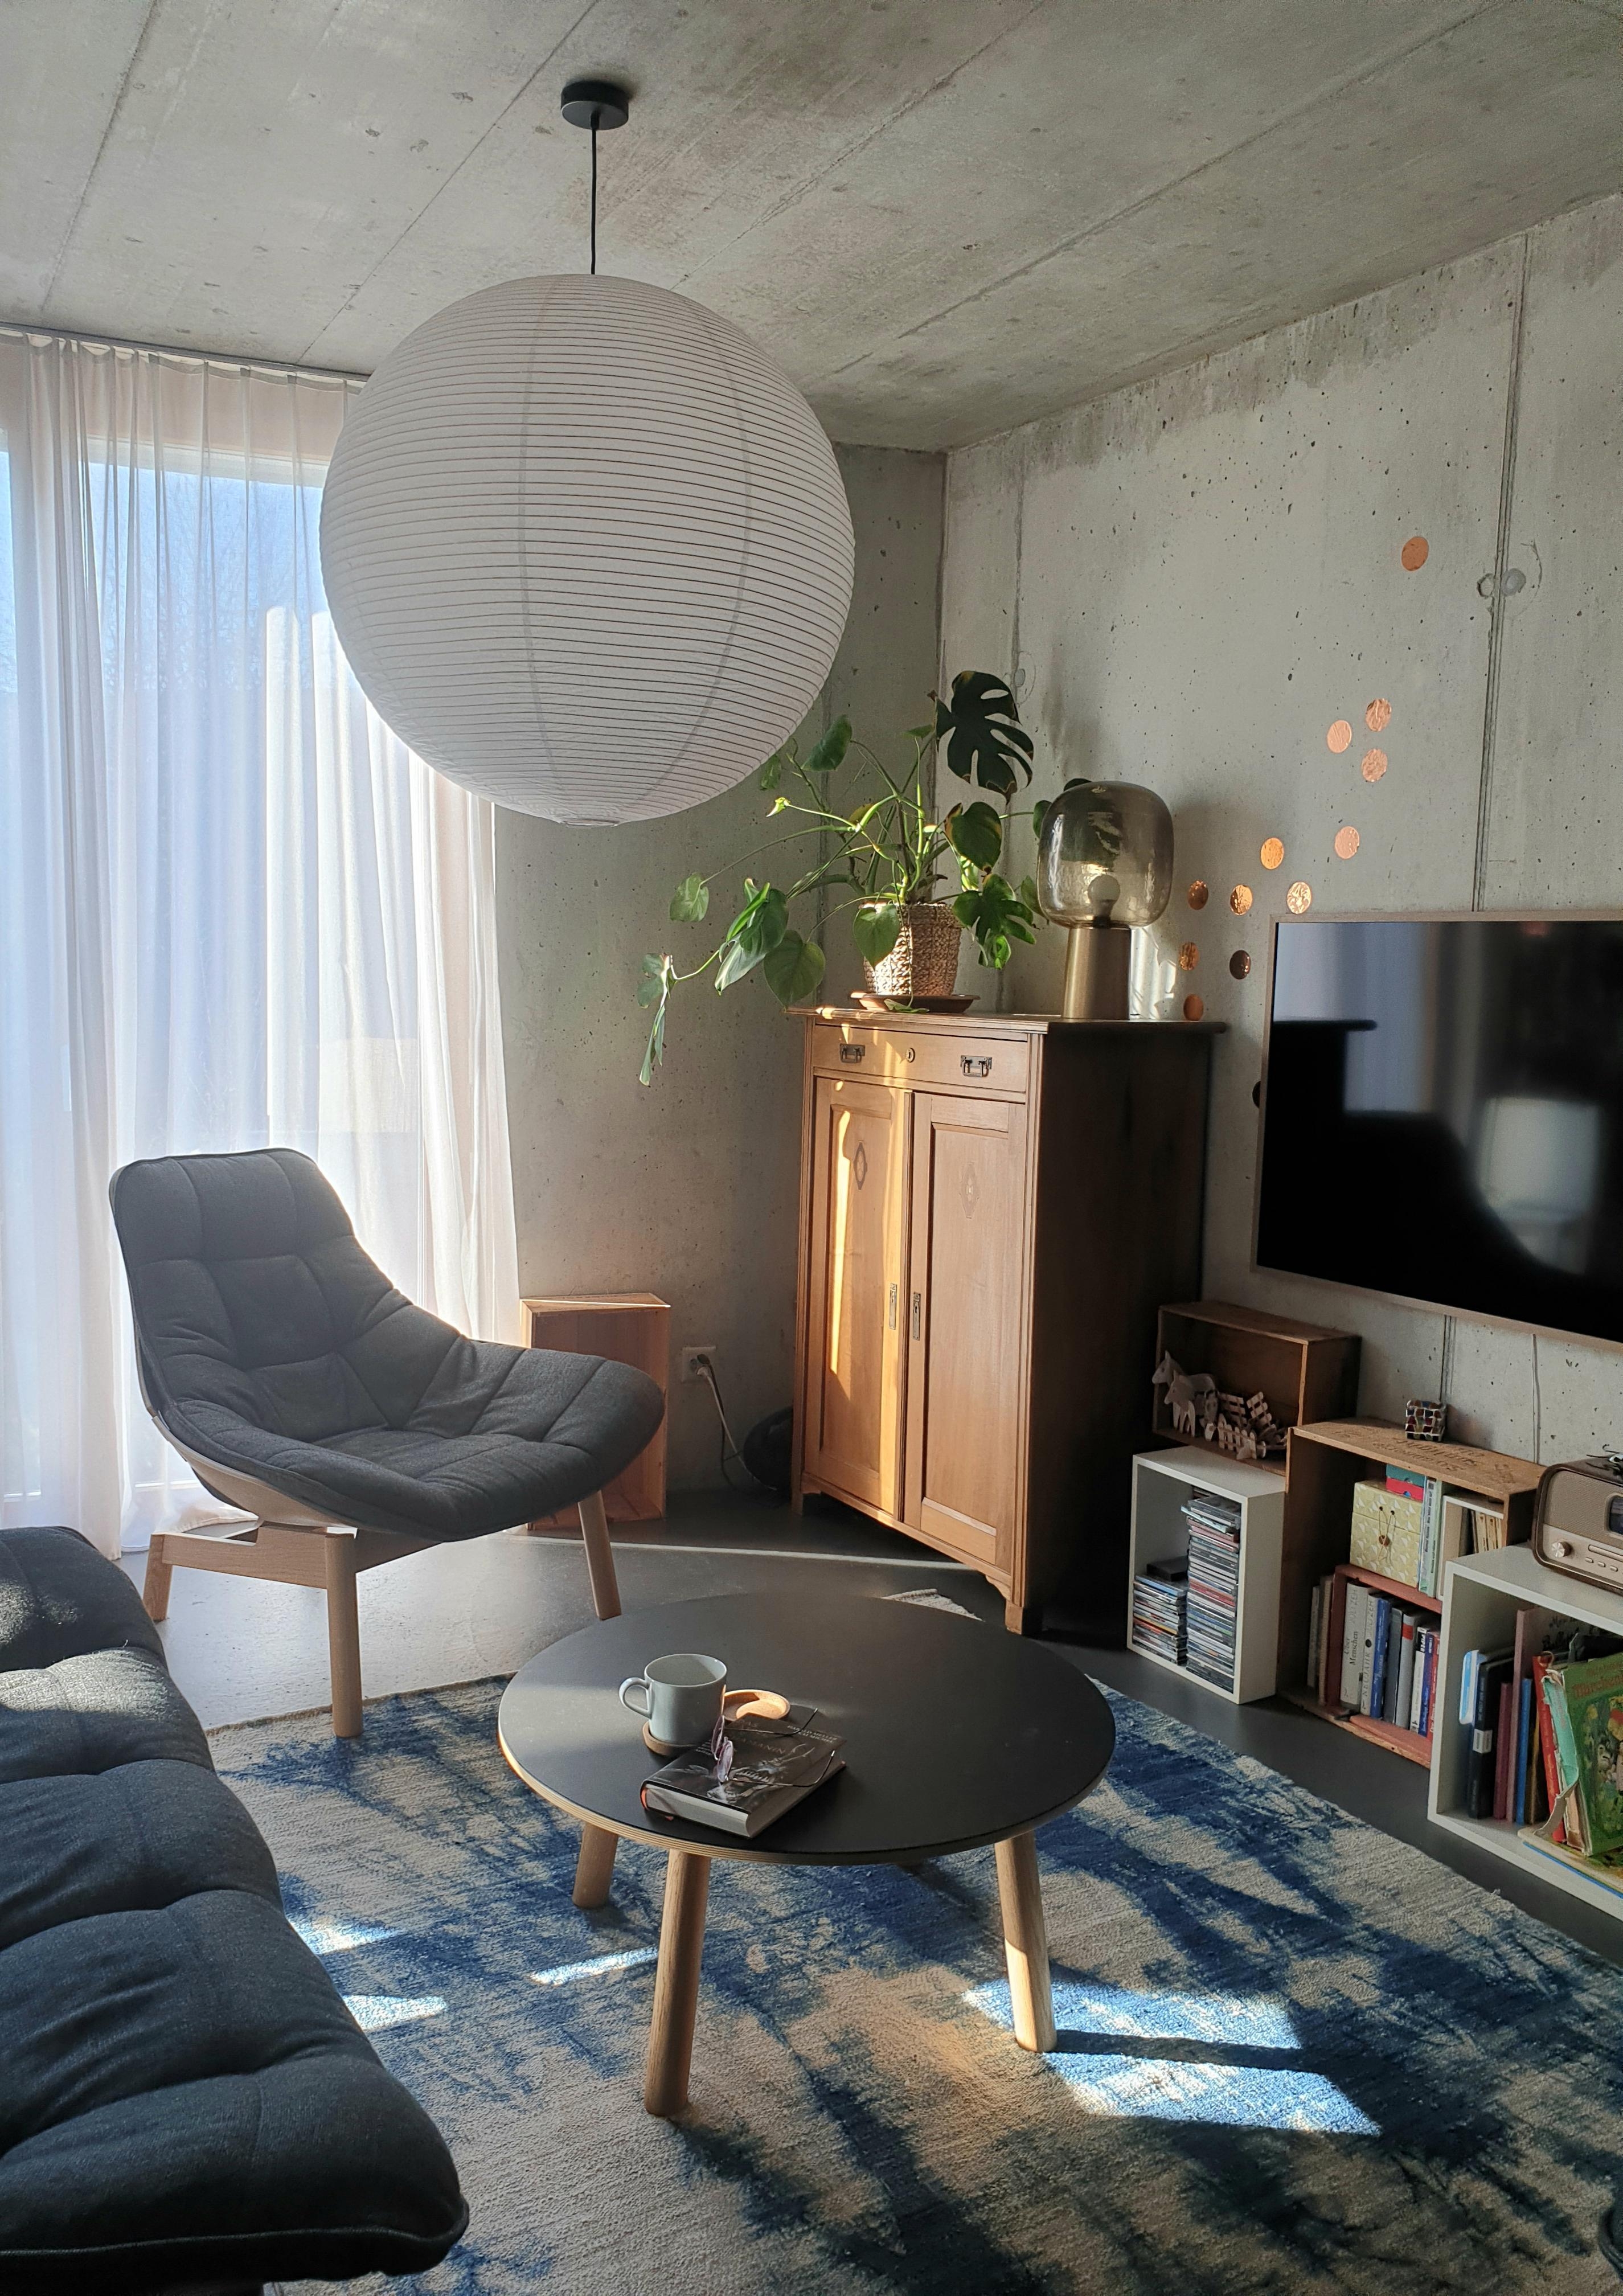 🌞🌞🌞
#Wohnzimmer#Wintersonne#Sessel
#Couchtisch#Kommode